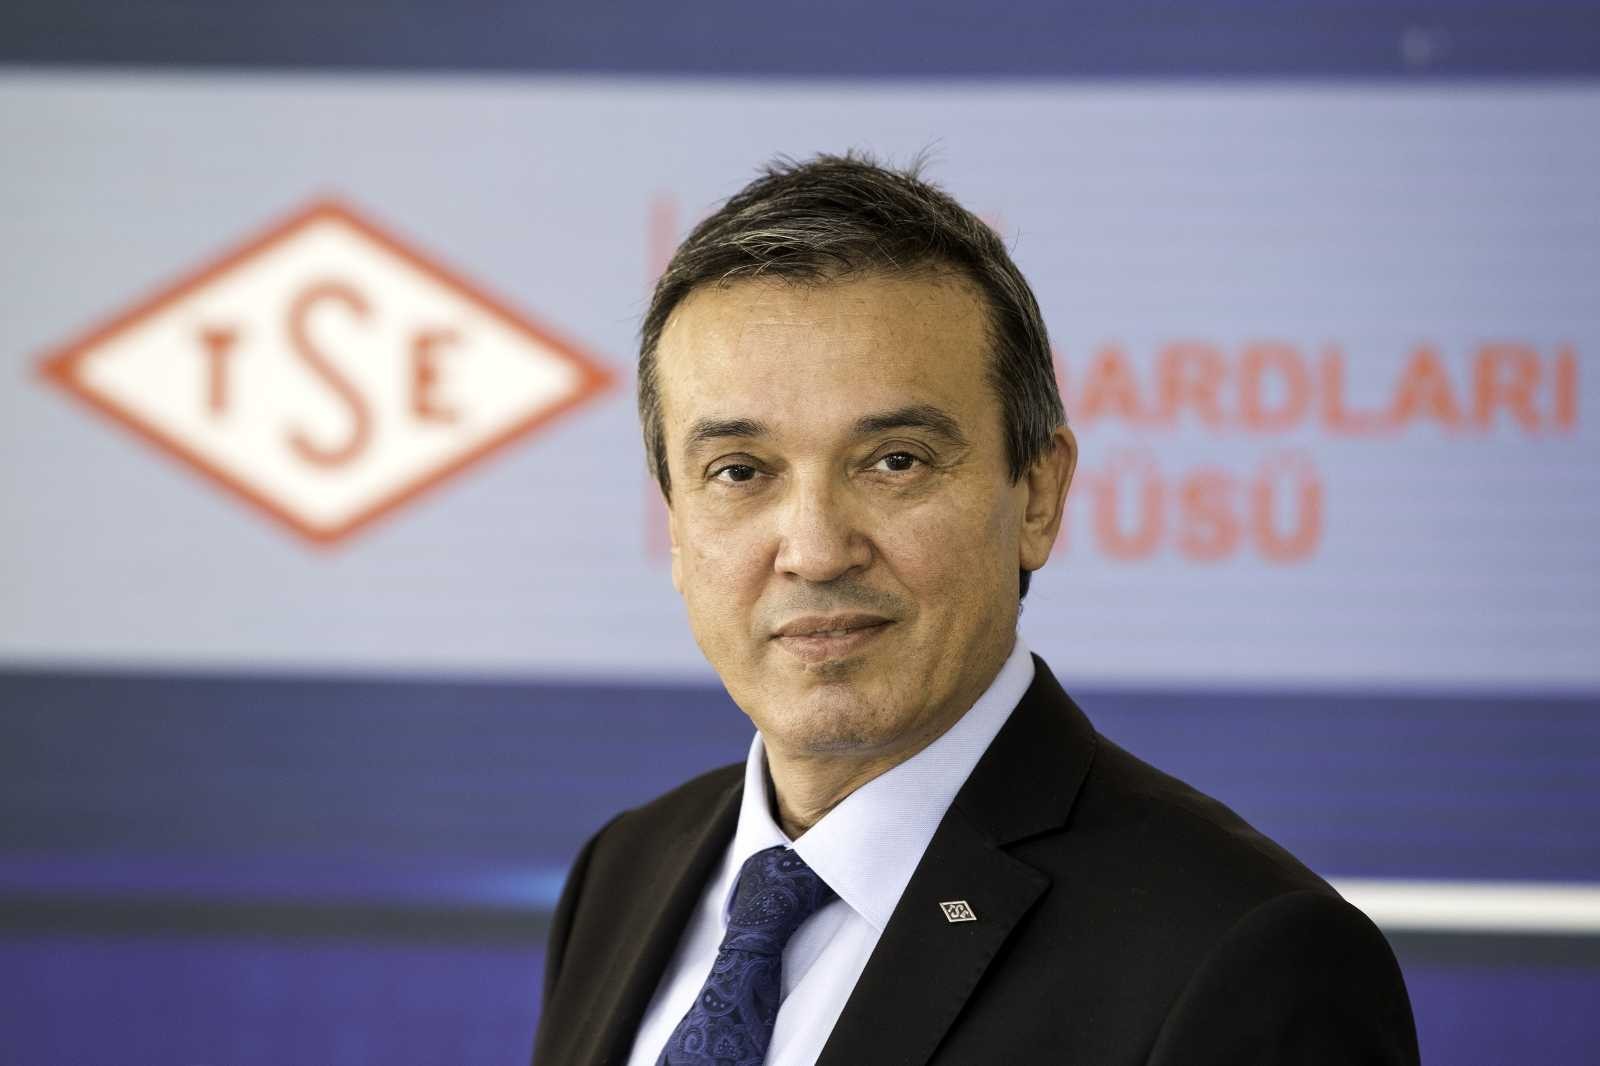 TSE Başkanı Prof. Dr. Şahin, ISO Konsey üyeliğine seçildi